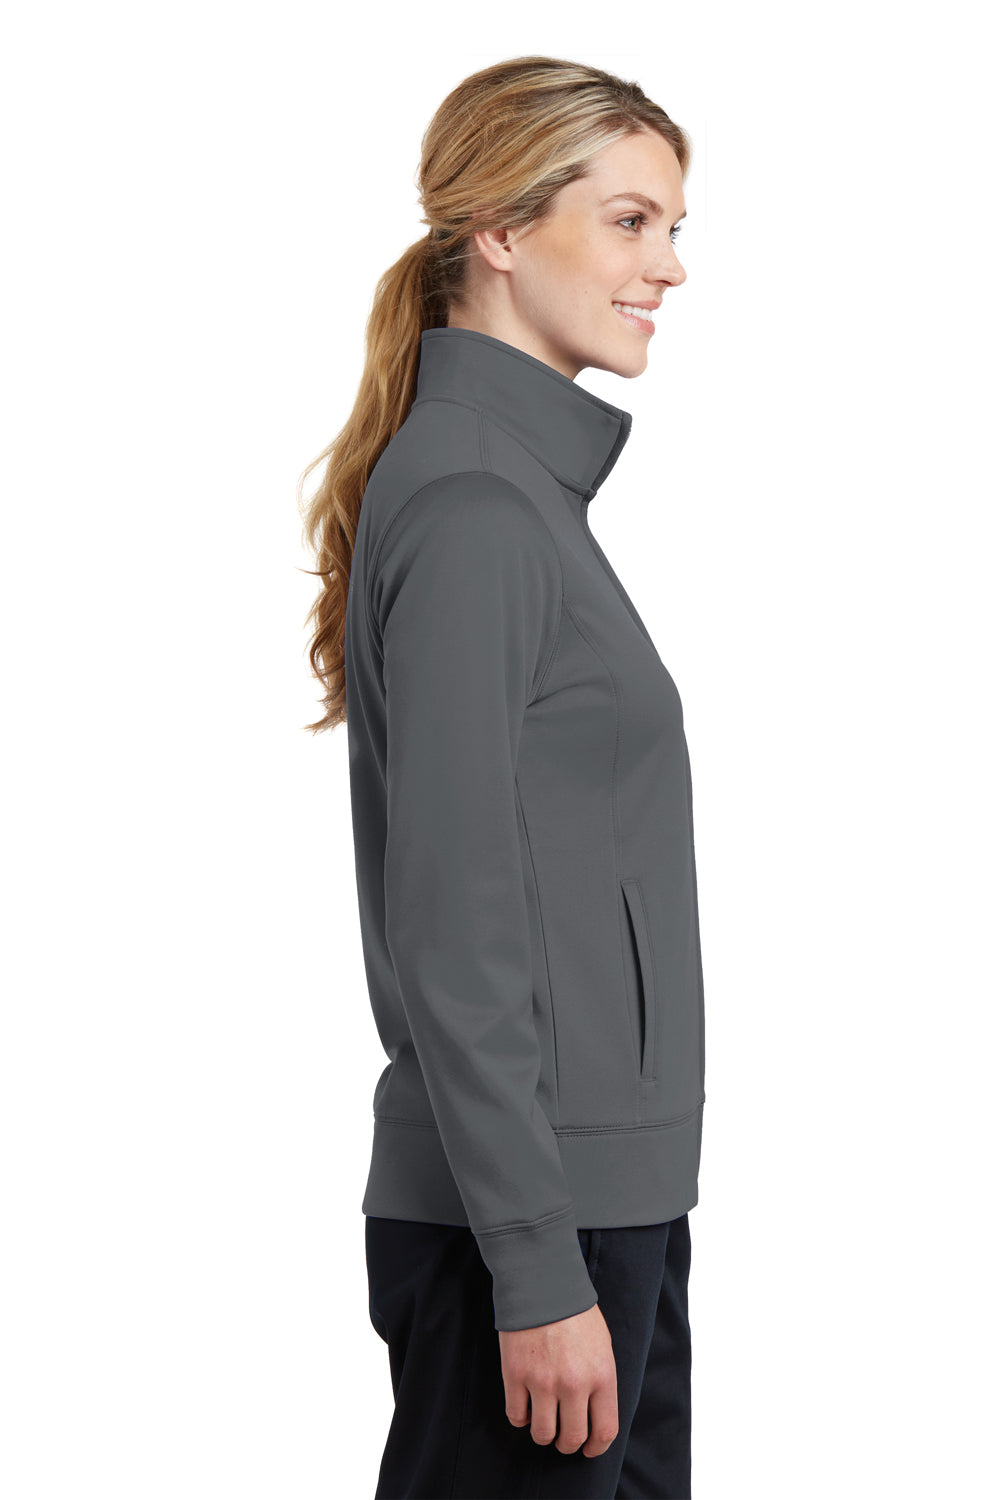 Sport-Tek LST241 Womens Sport-Wick Moisture Wicking Fleece Full Zip Sweatshirt Dark Grey Side